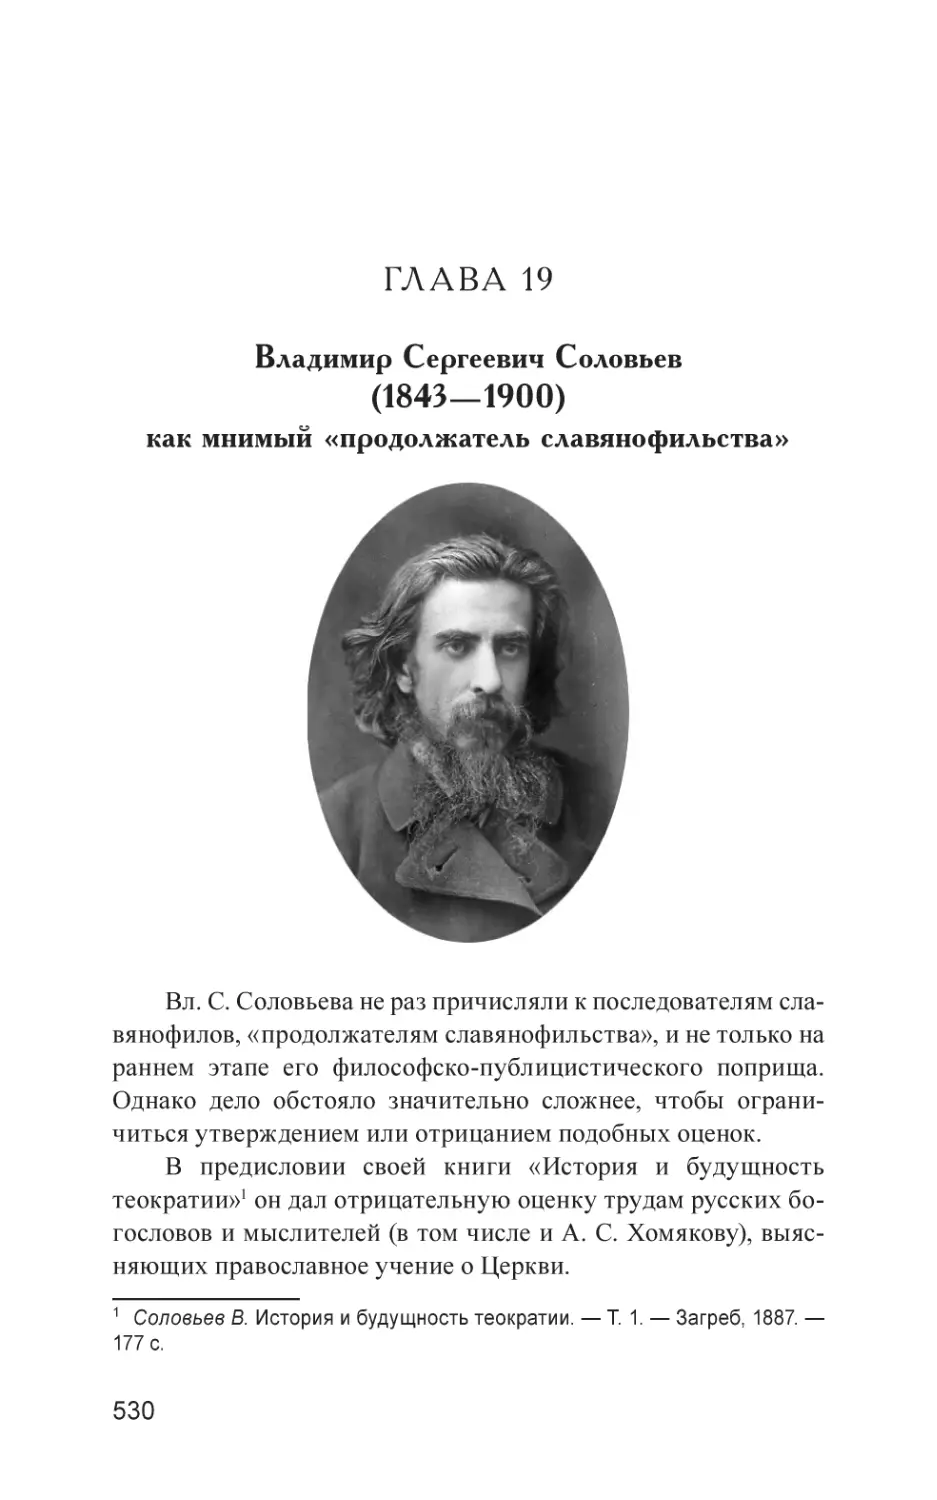 Глава 19
Владимир Сергеевич Соловьев (1843—1900) как мнимый «продолжатель славянофильства»